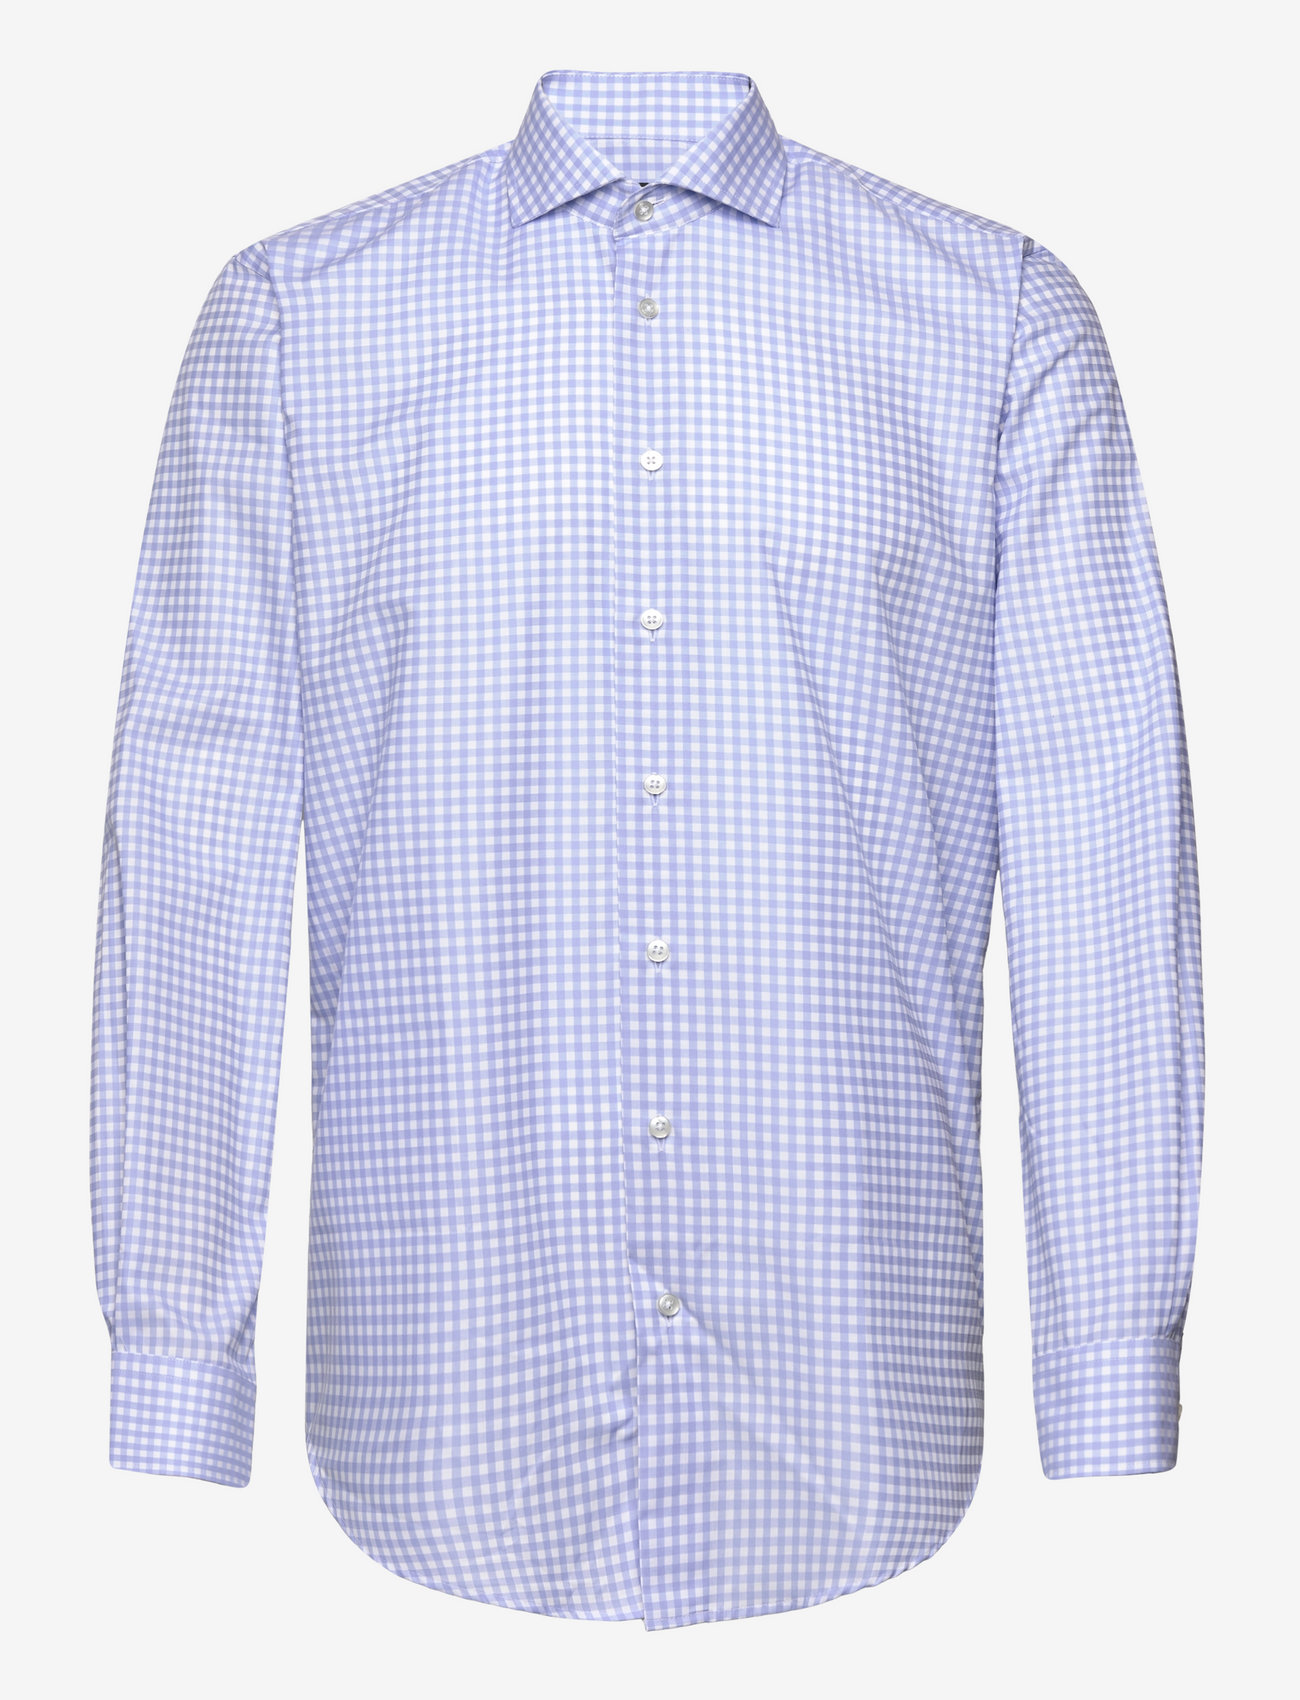 Bosweel Shirts Est. 1937 - Slim fit Mens shirt - karierte hemden - light blue - 0